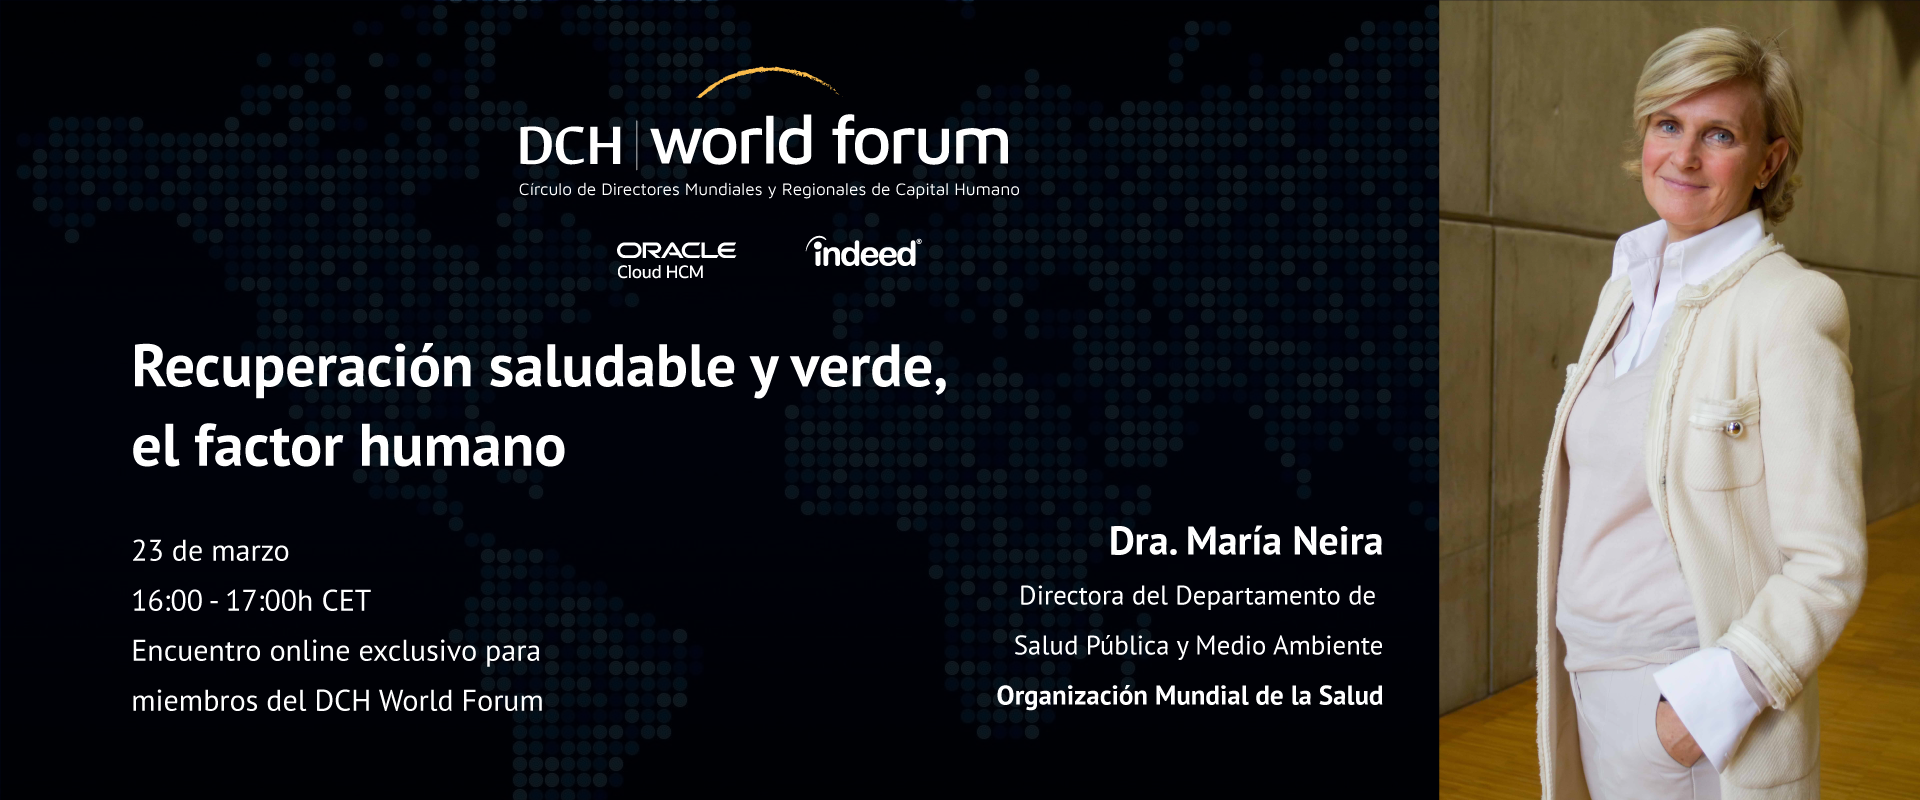 world-forum